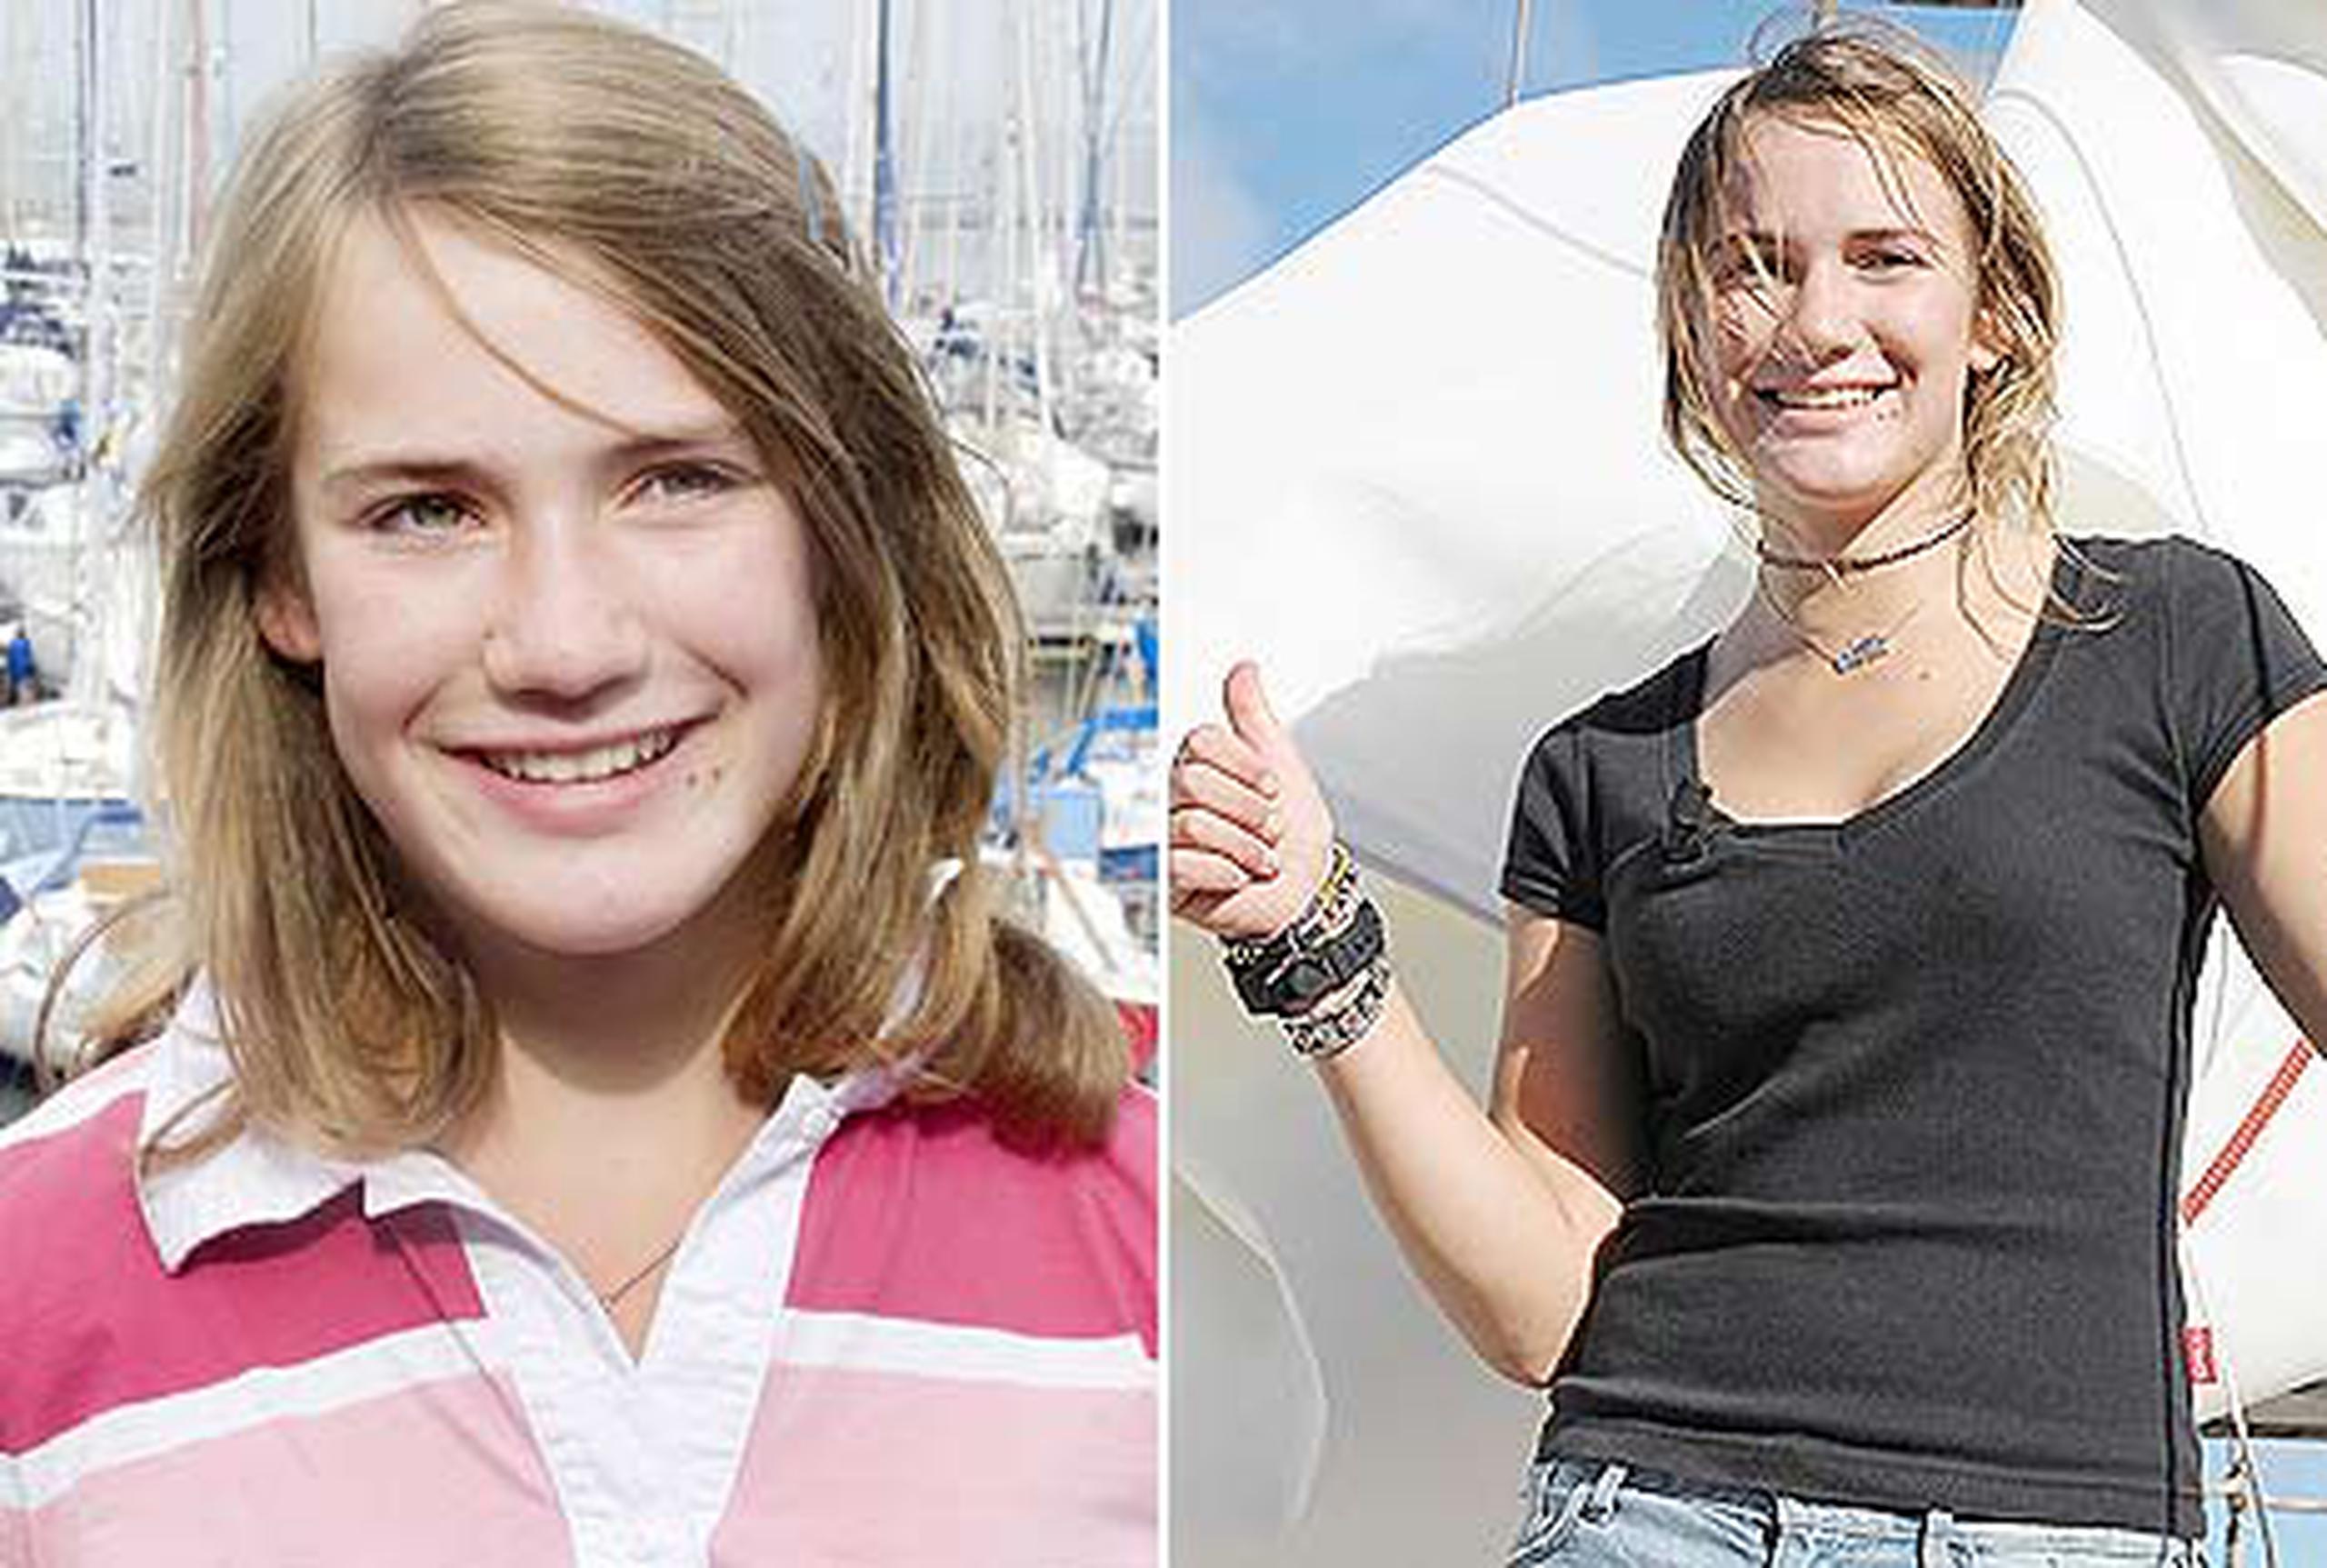 Foto de Laura Dekket a los 14 años, cuando acudió a los tribunales en 2010 para exigir su derecho de navegar en alta mar alrededor del mundo. A la derecha, Dekket al culminar su travesía que se extendió por un año y un día. (AFP/Marco De Stwart y Jean Michael Andre)